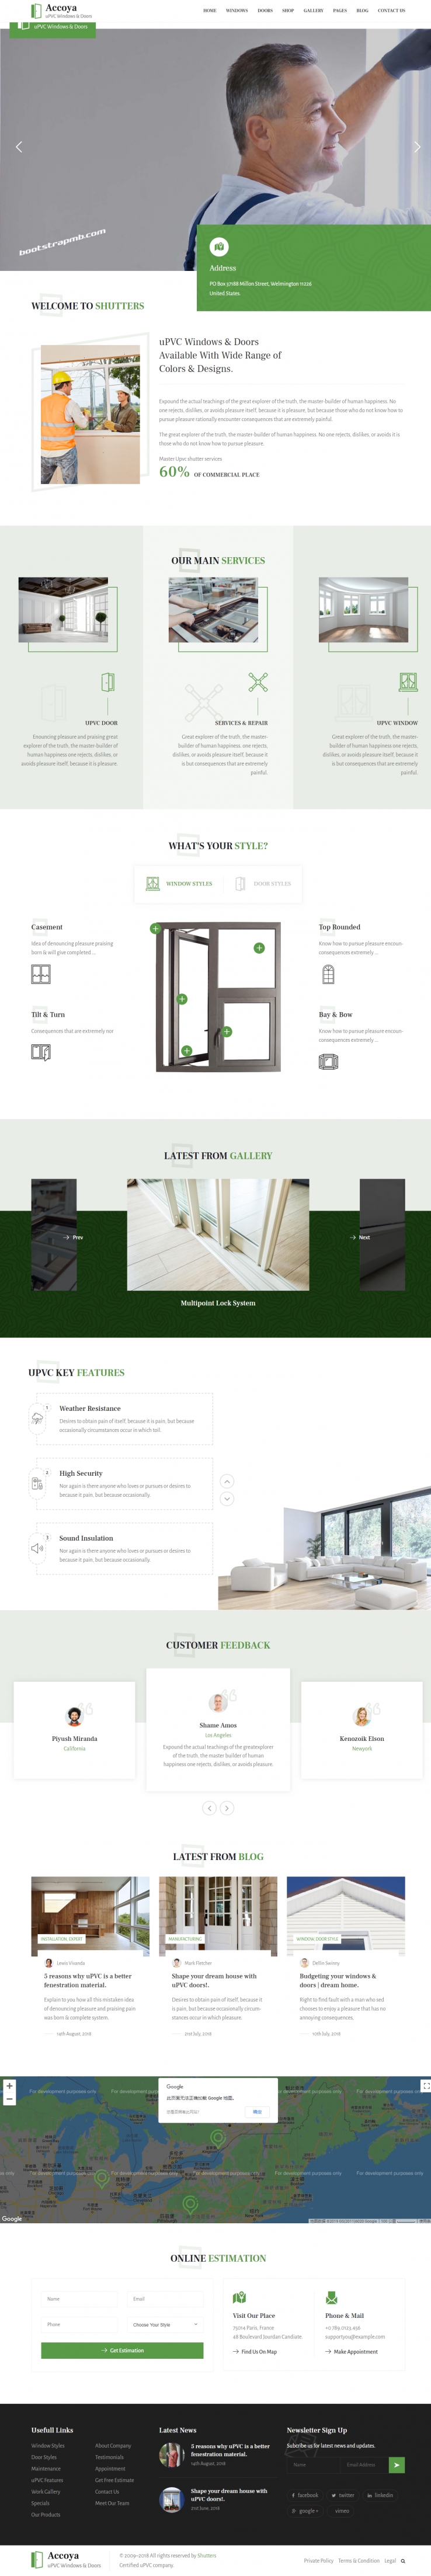 绿色欧美风格的门窗保洁服务企业网站源码下载